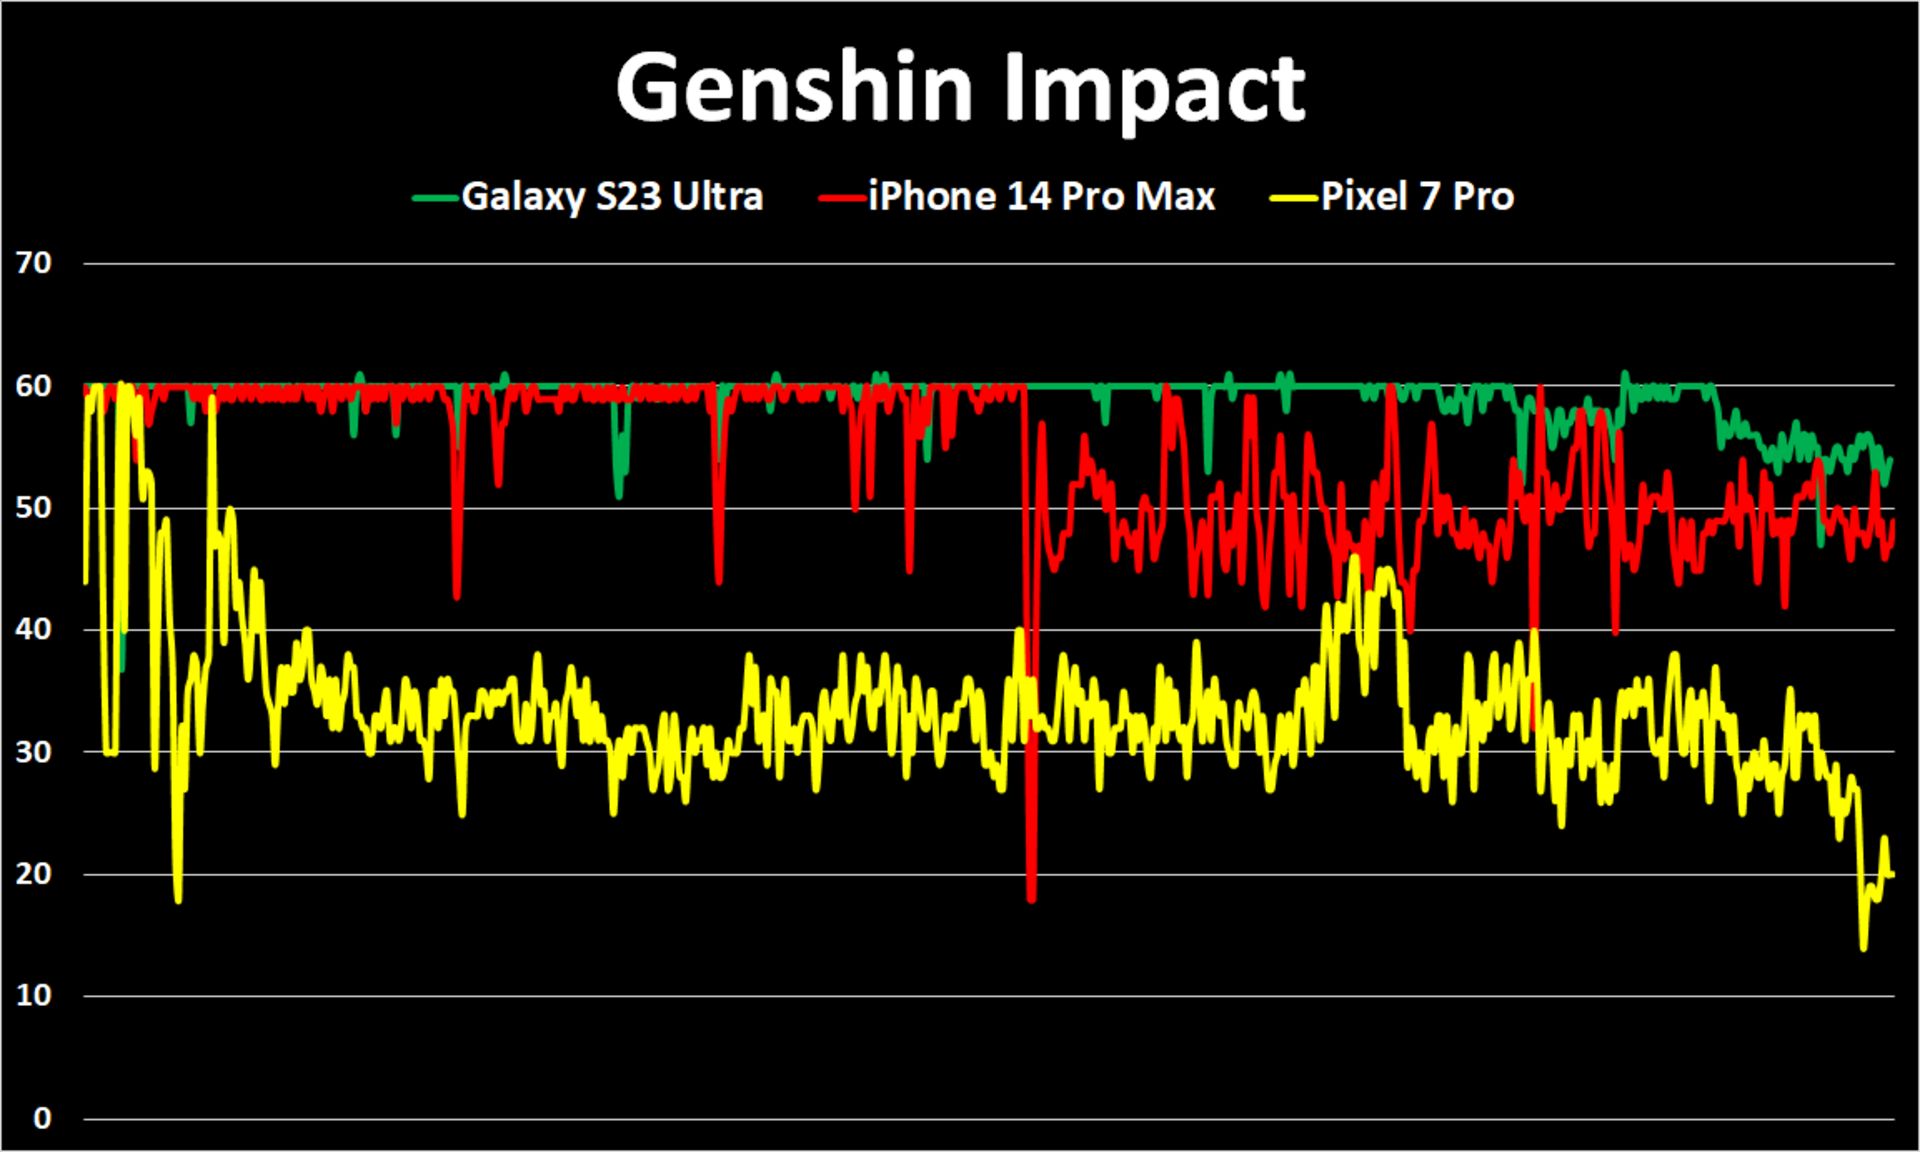 عملکرد پرچمداران بازار در اجرای بازی Genshin Impact